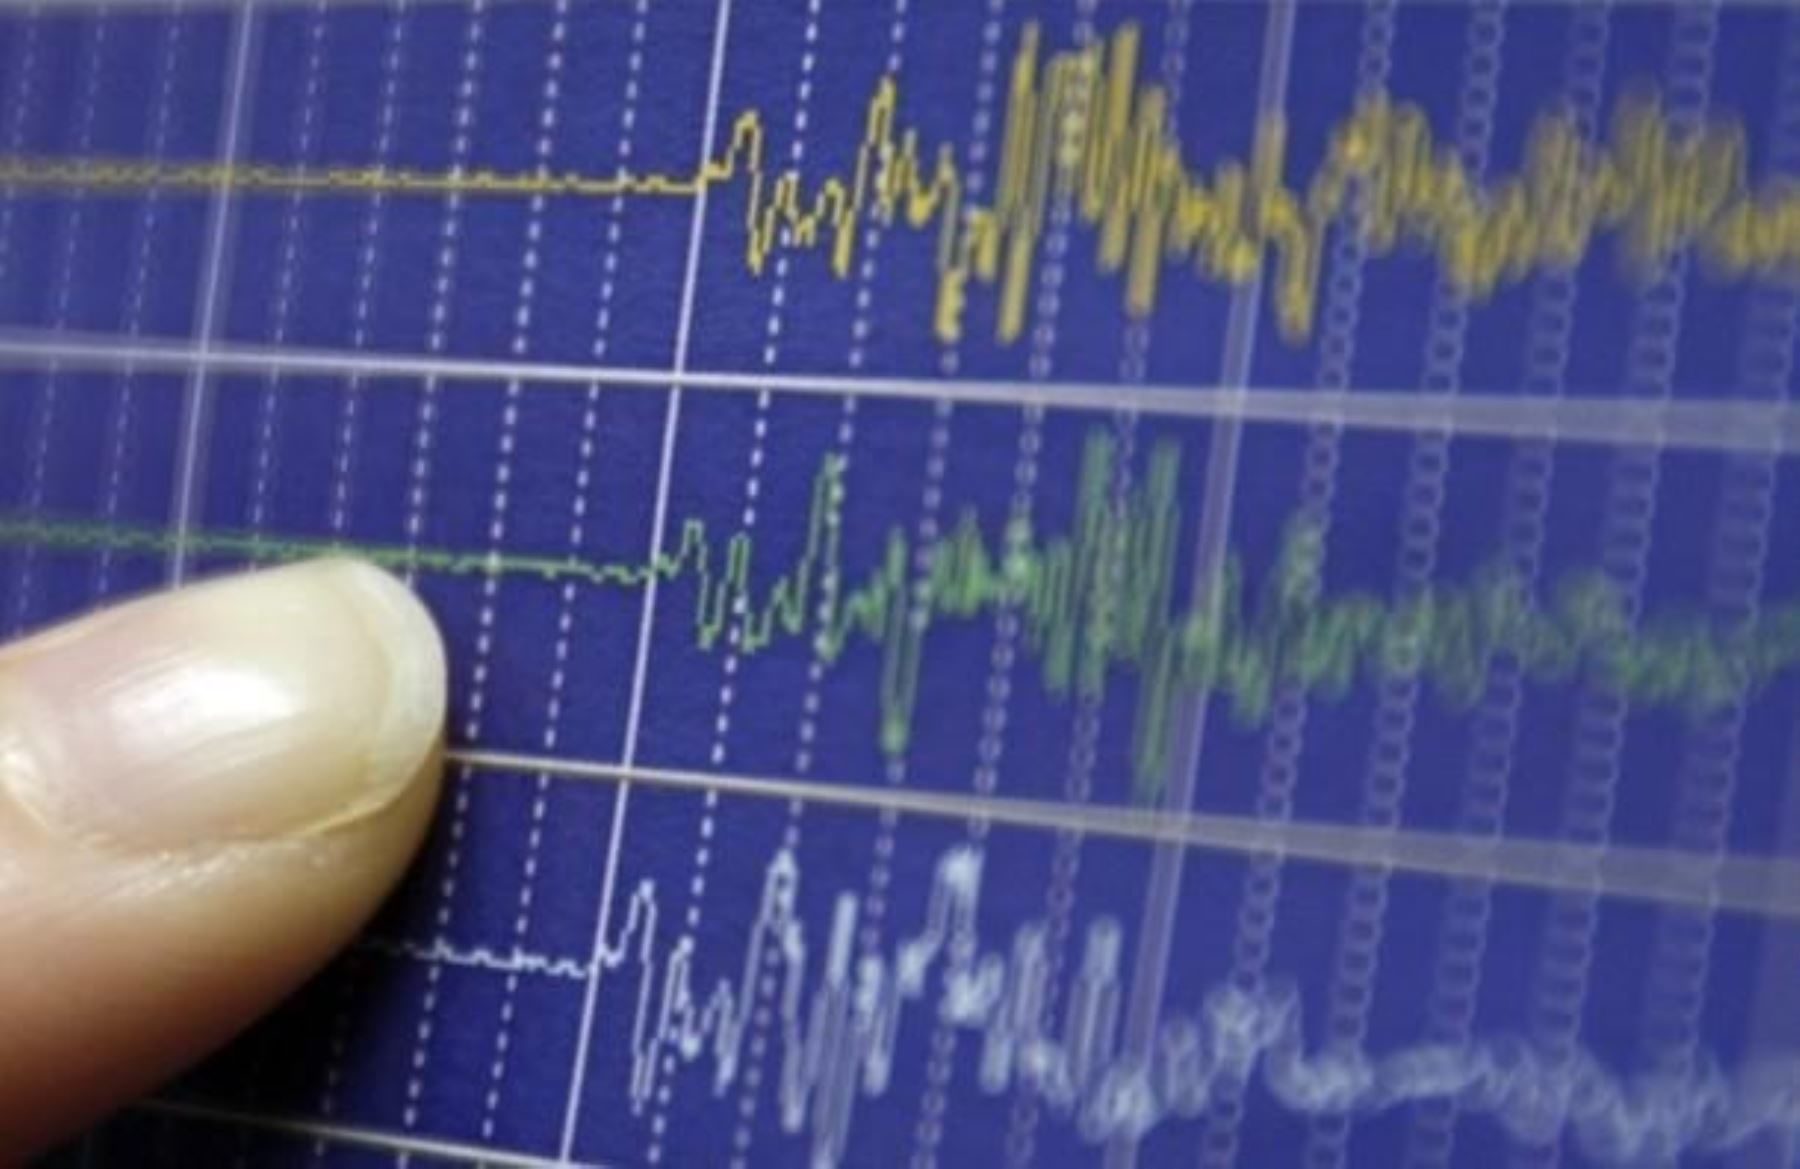 La región Ucayali registró tres sismos de mediana intensidad en menos de 24 horas. El más reciente ocurrió esta madrugada, informó el Instituto Geofísico del Perú